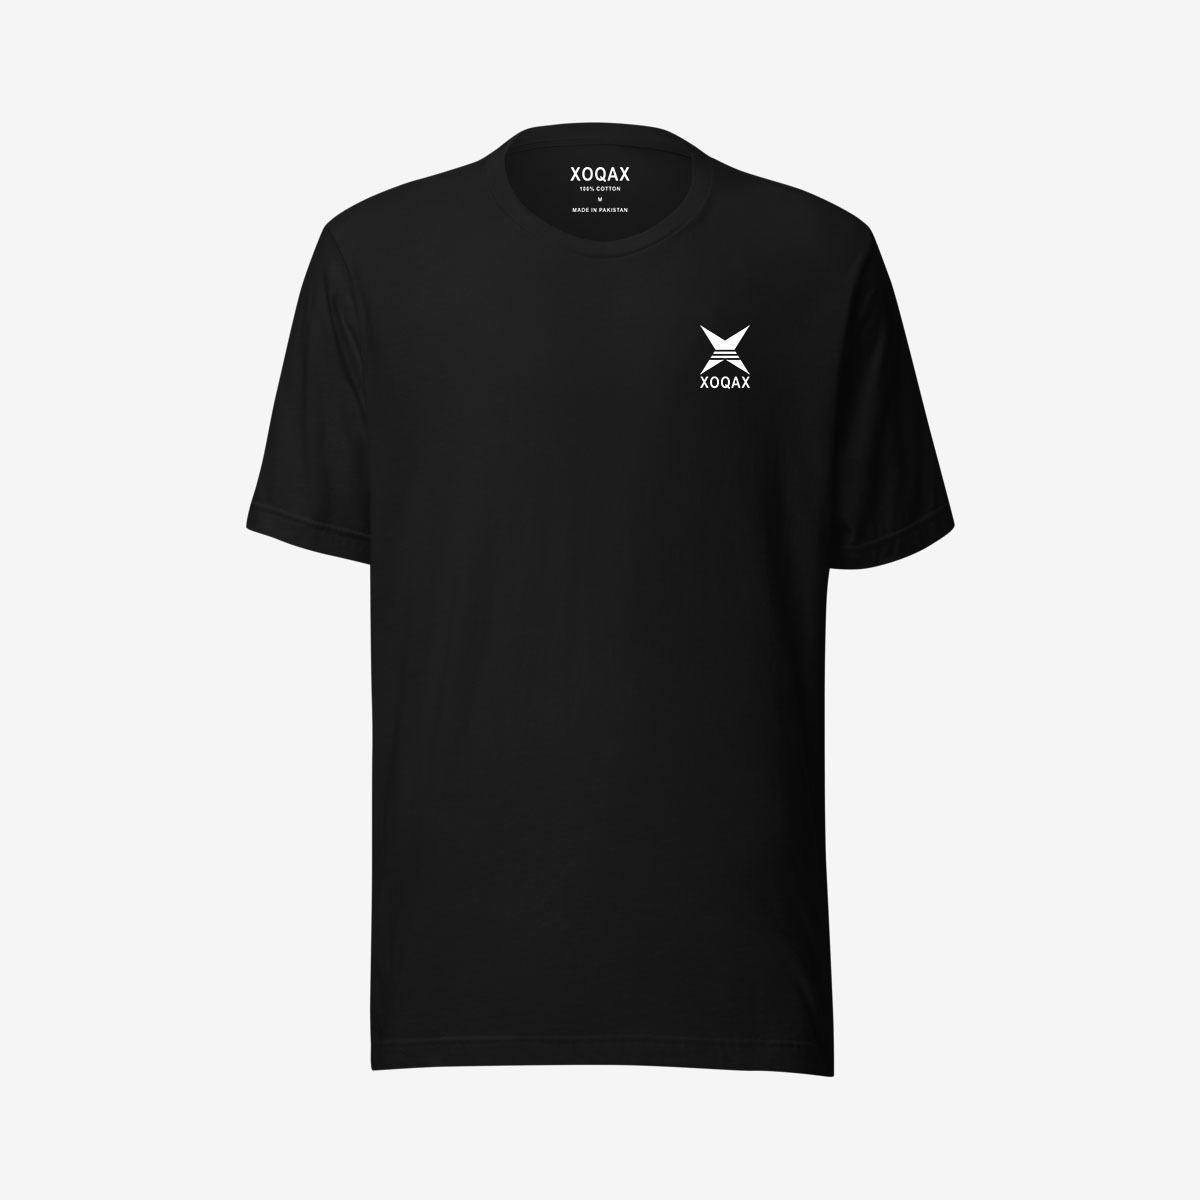 xoqax-basic-t-shirts-black